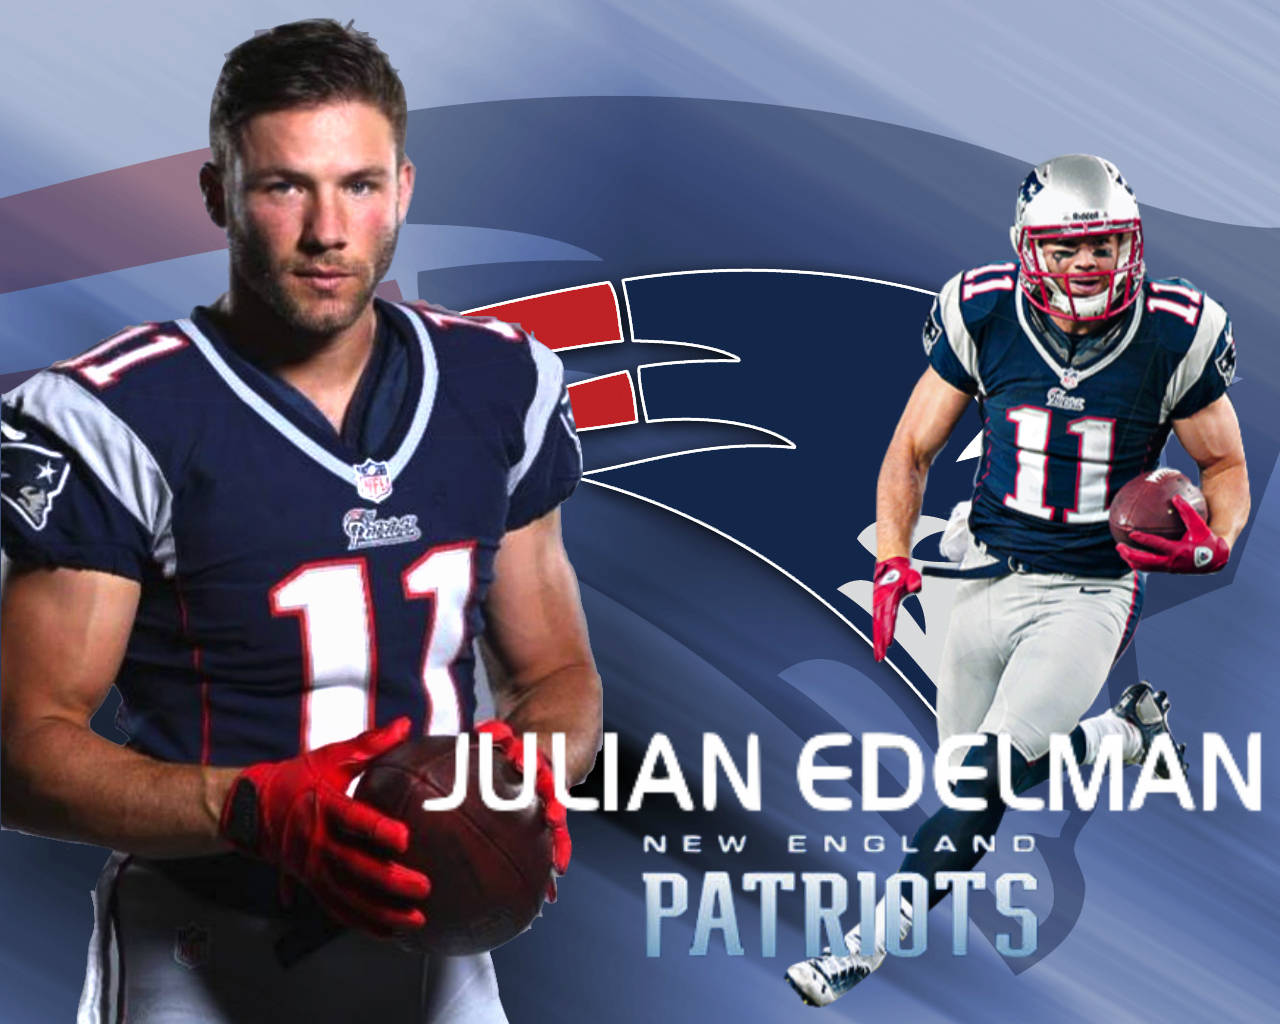 Julianedelman Och En Spelare Från New England Patriots. Wallpaper